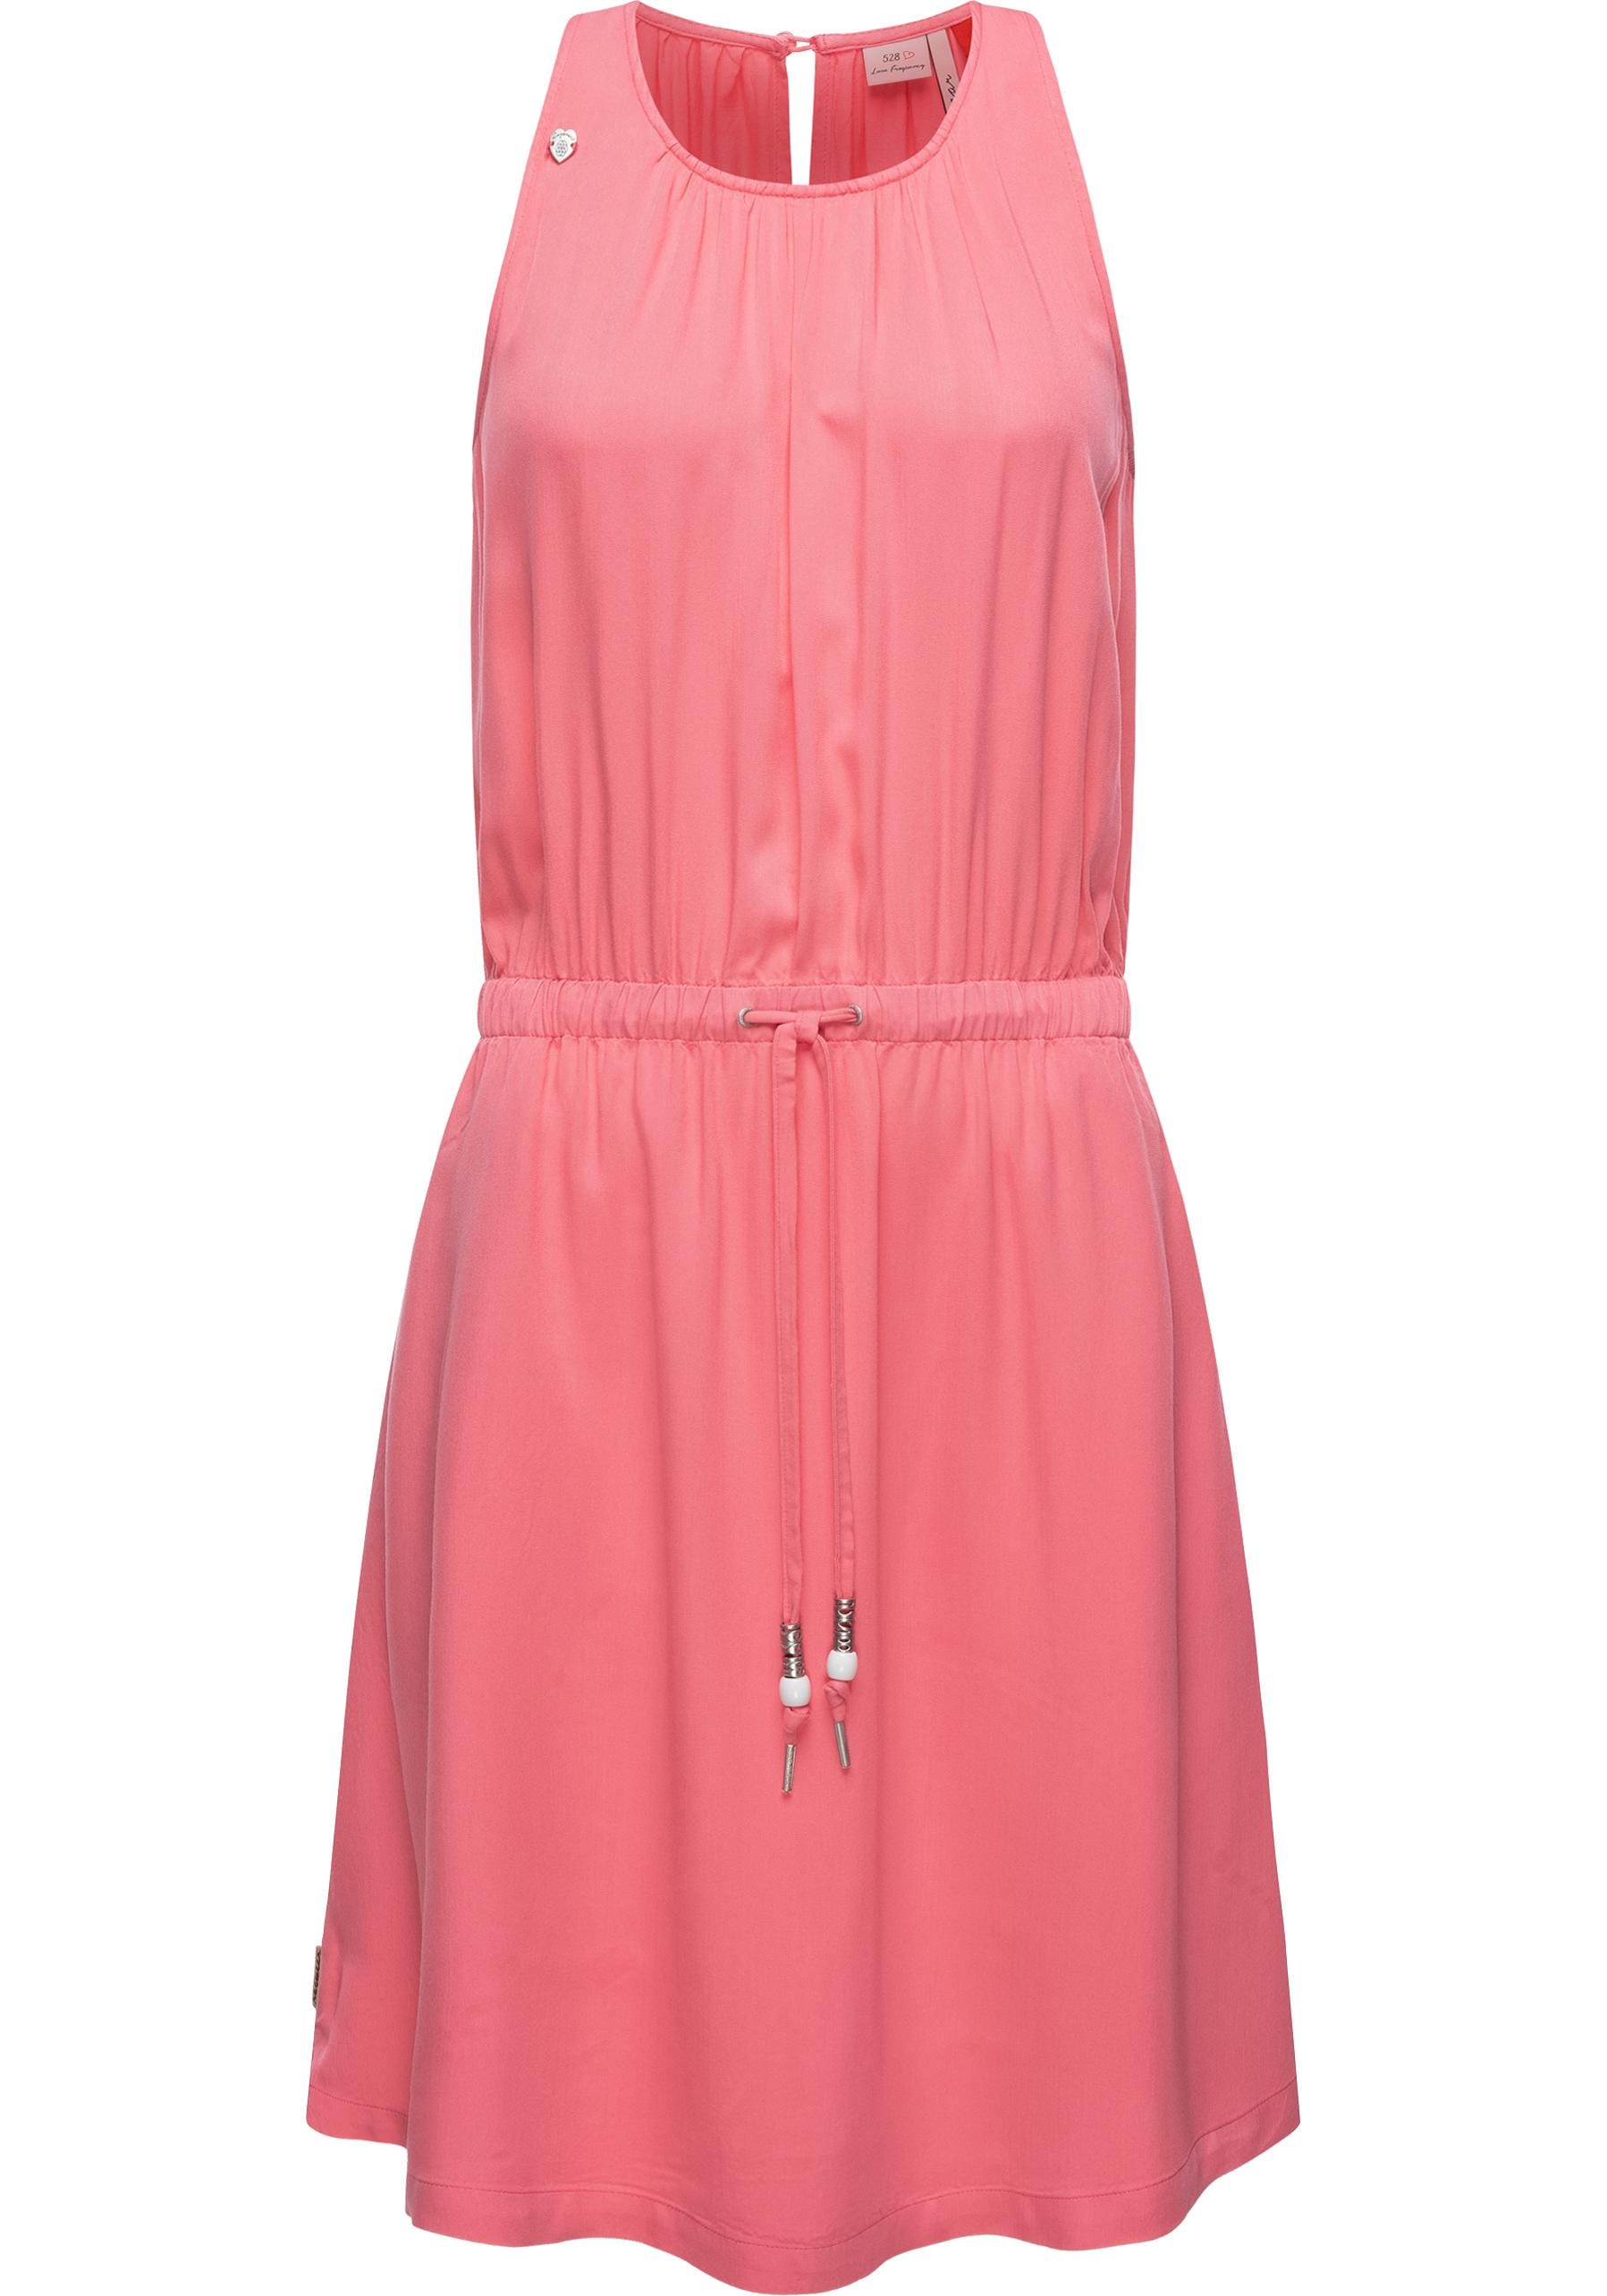 Ragwear Blusenkleid »Sanai«, stylisches Sommerkleid mit verspielten Details